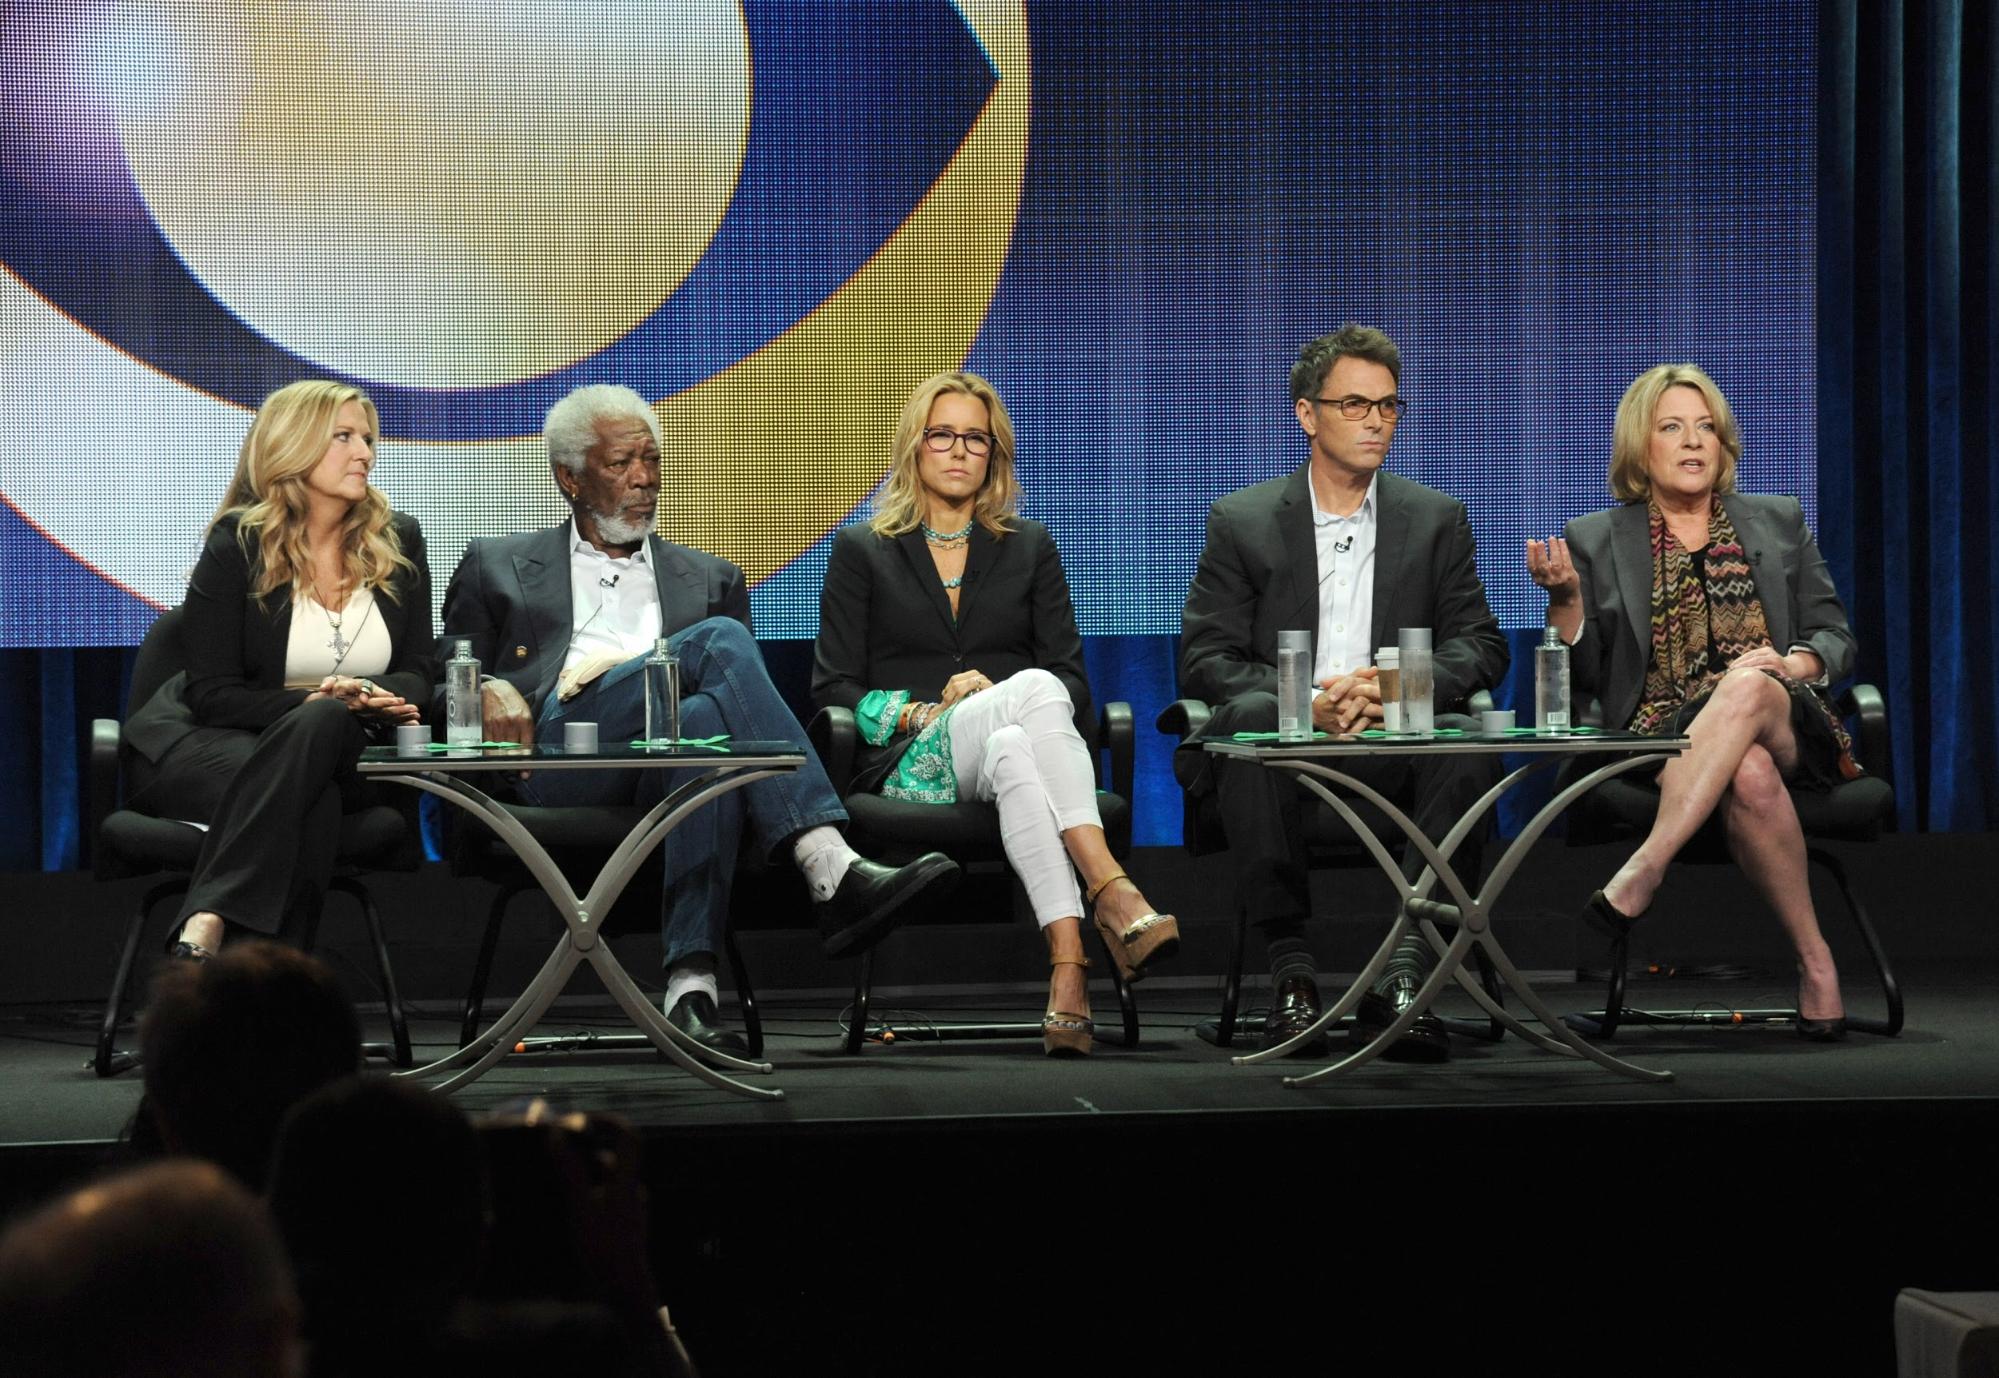 Lori McCreary, Morgan Freeman, Tea Leoni, Tim Daly, Barbara Hall. Beverly Hills, California. 